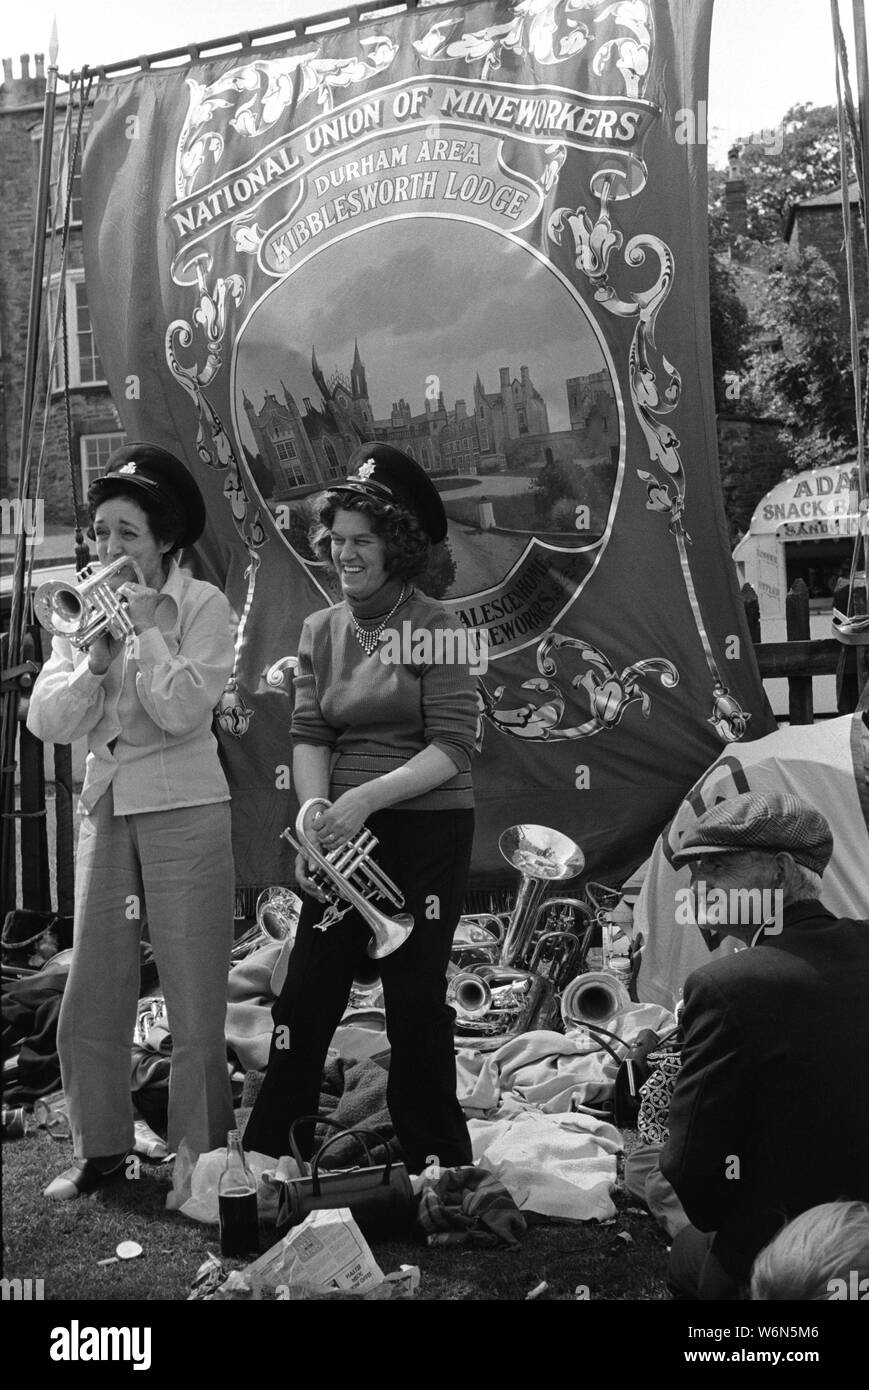 Durham Miners Gala. Due mogli di minatori di carbone, si divertono e suonano con gli strumenti musicali della National Union of Mineworkers, area di Durham, Kibblesworth Lodge banner 70s County Durham, Inghilterra UK 1970s. HOMER SYKES Foto Stock